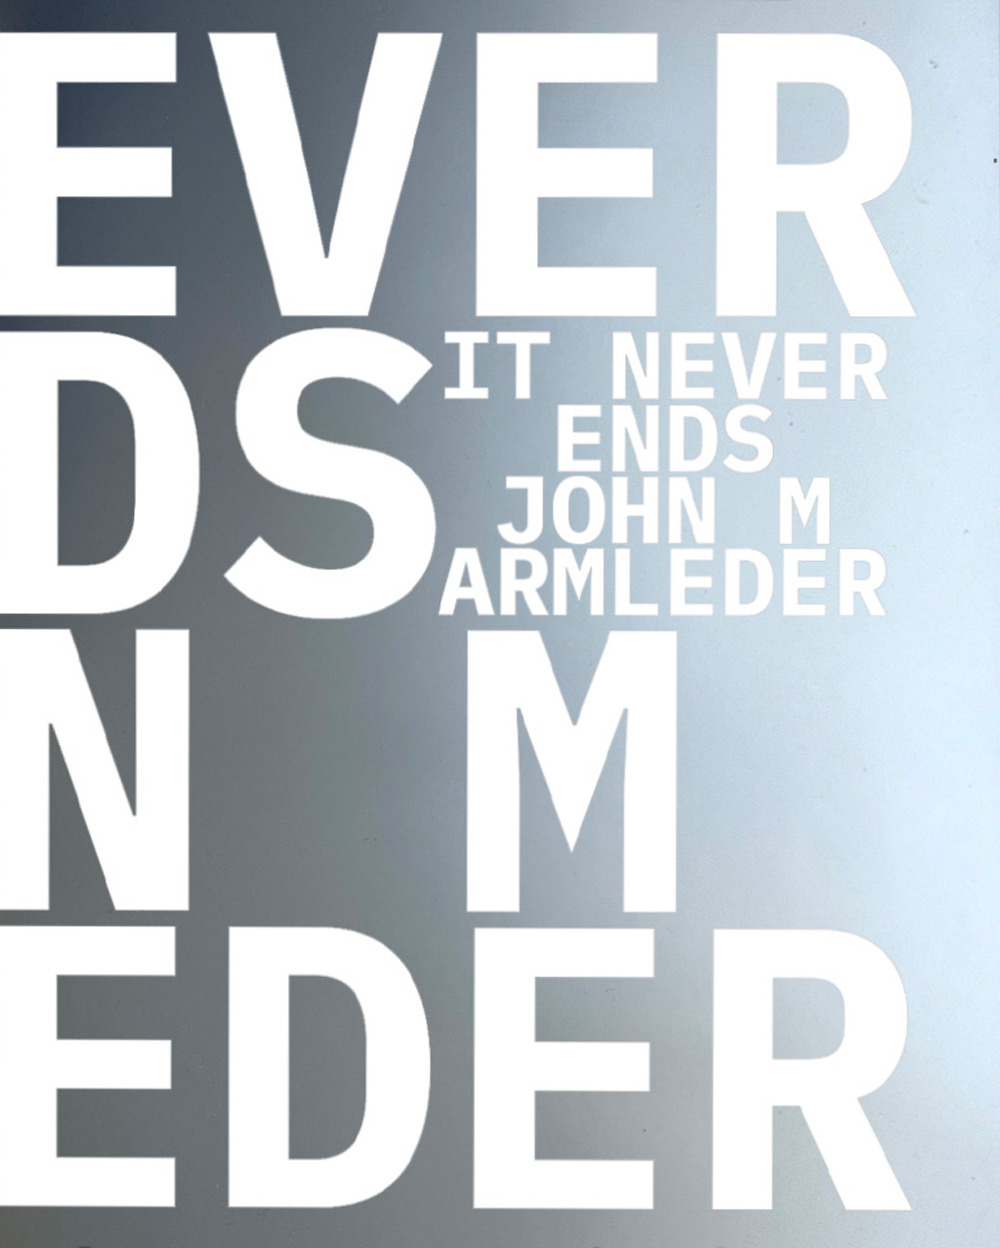 John M Armleder & Guests. It Never Ends. Ediz. inglese, francese e olandese